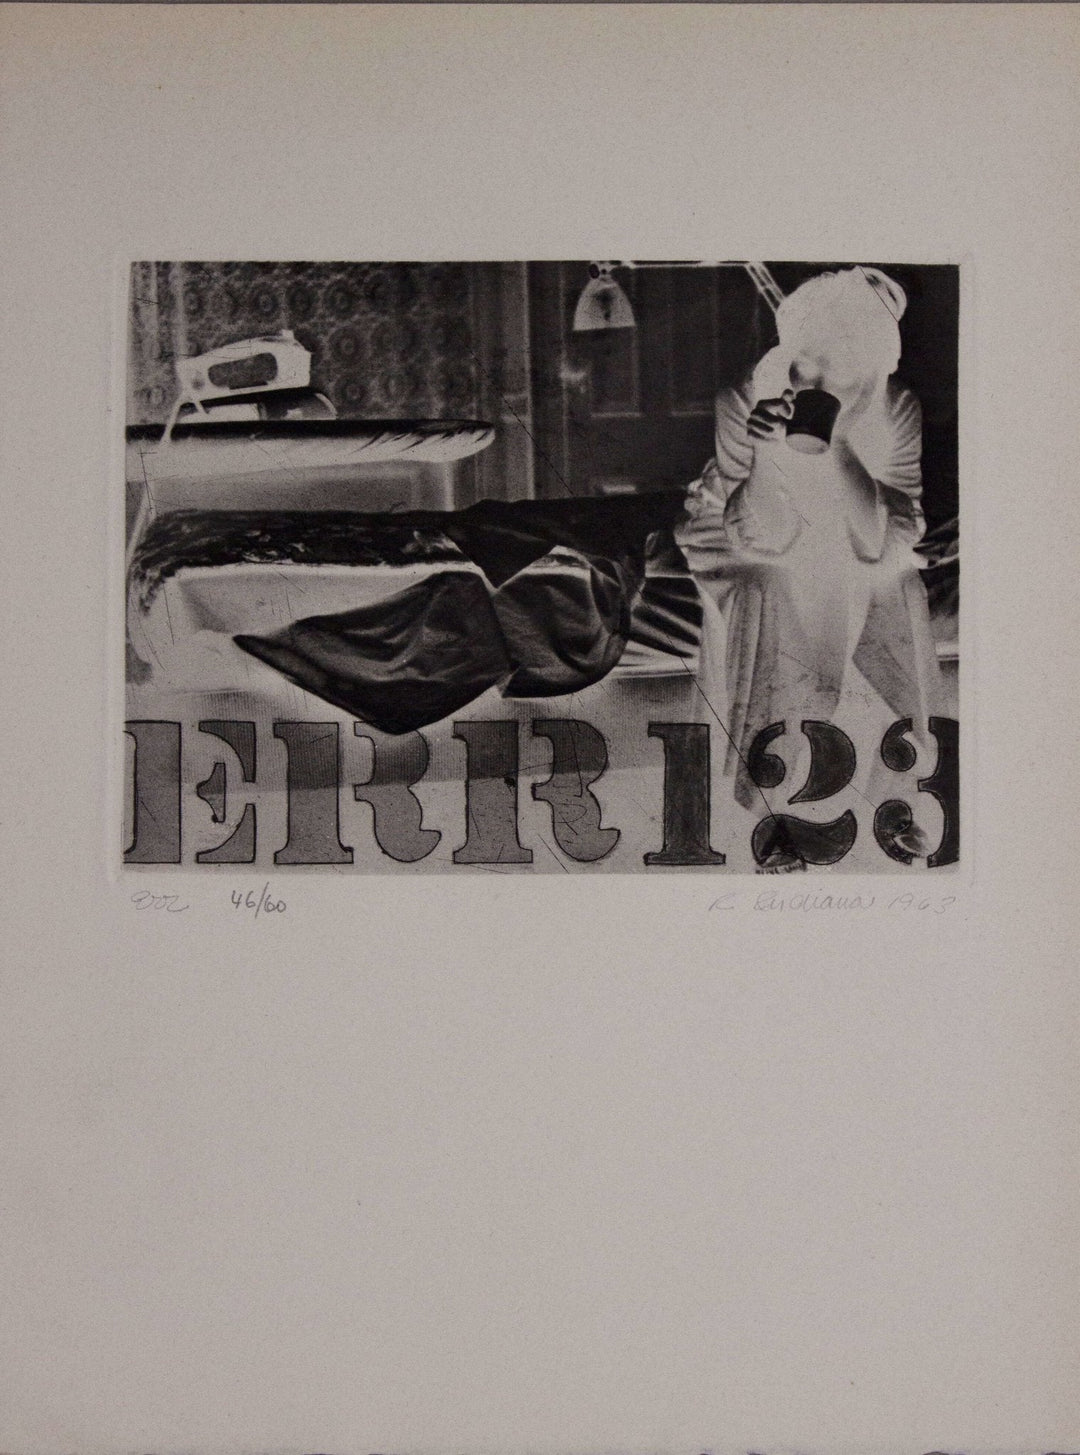 INDIANA Robert, Err123, 1963, Acquaforte originale firmata - EmporiumArt